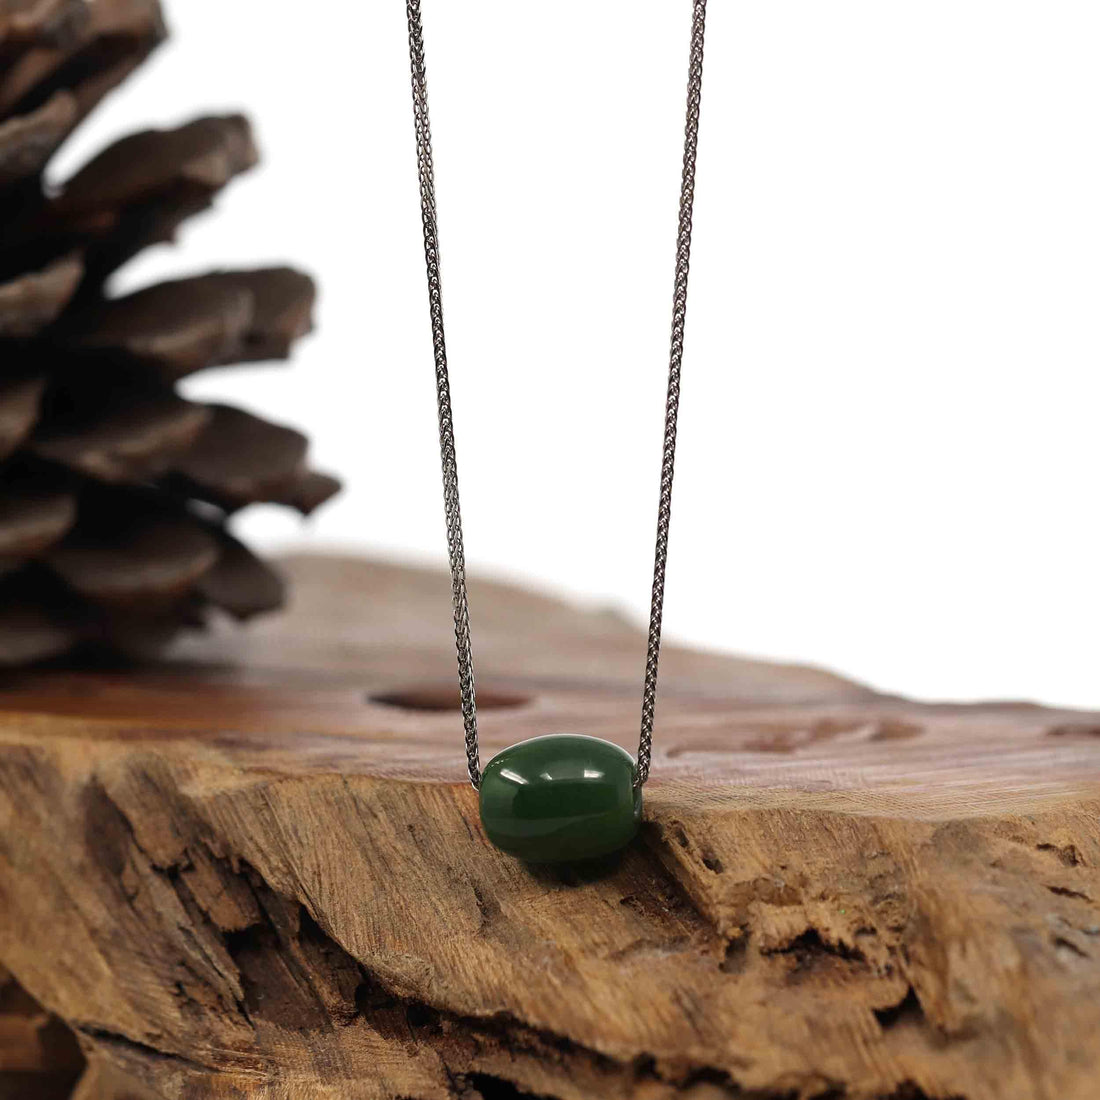 Baikalla Jewelry Jade Pendant Necklace Baikalla™ "Good Luck Button" Necklace Nephrite Green Jade Lucky TongTong Pendant Necklace